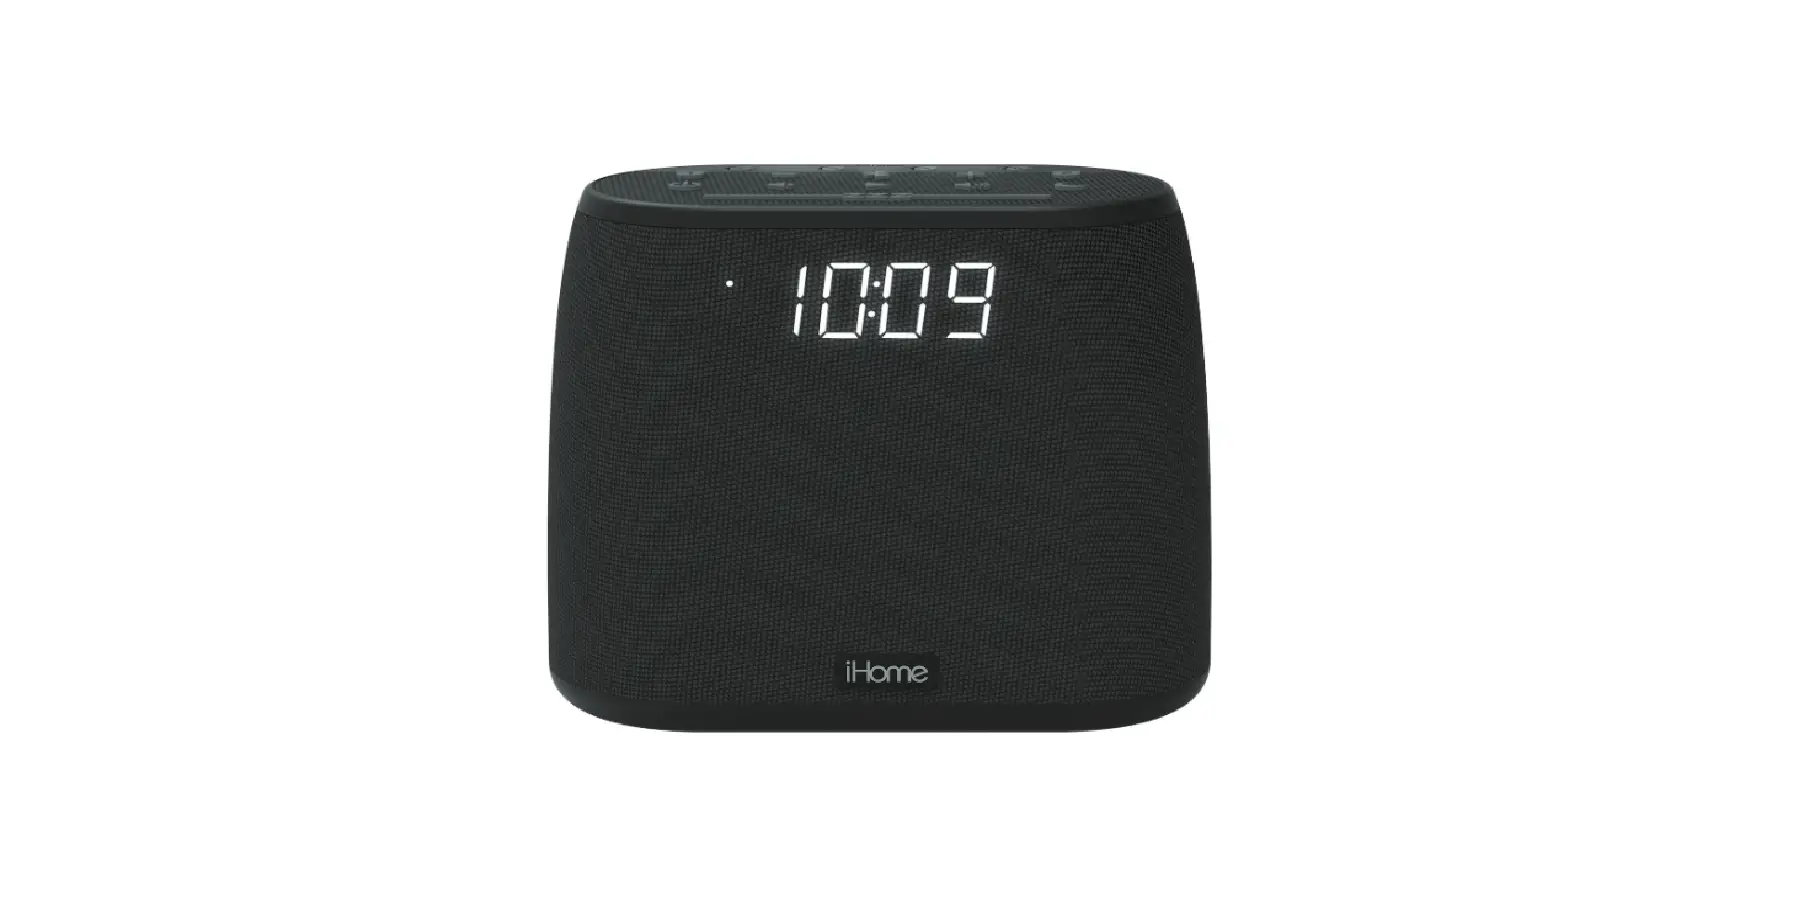 Dual Alarm Clock Radio